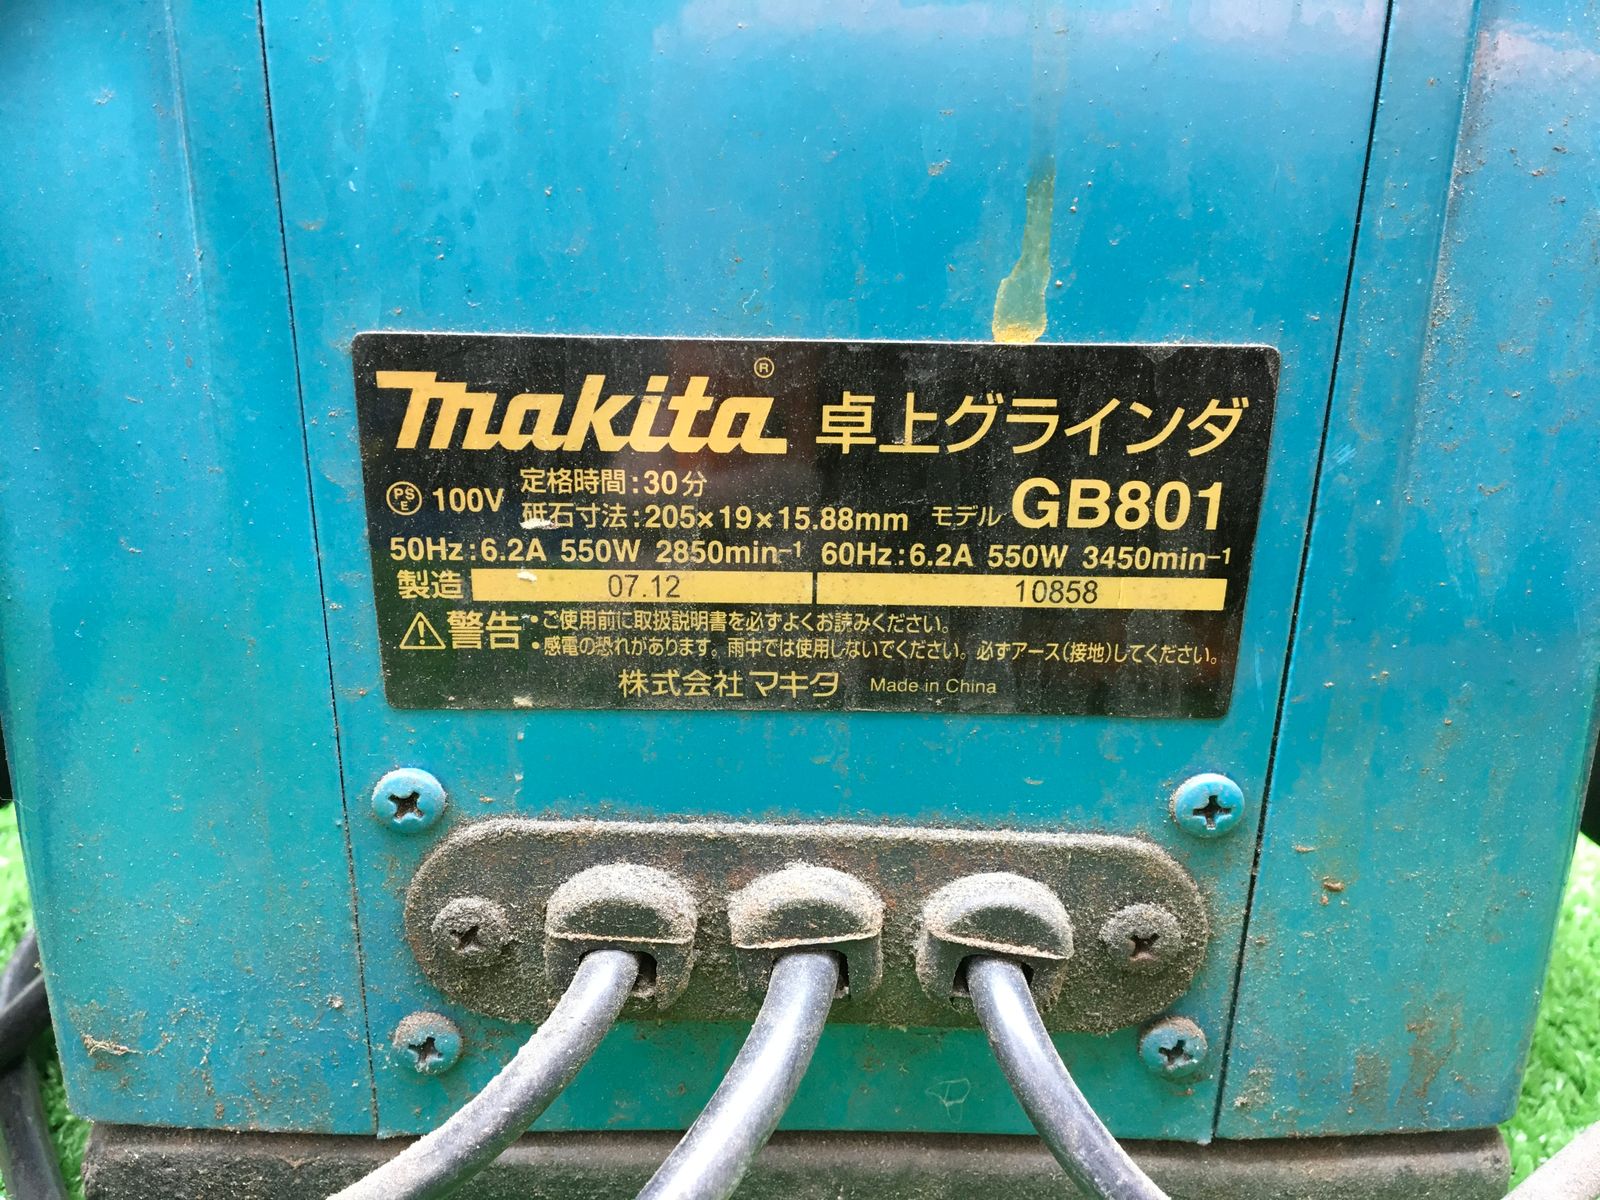 Makita/マキタ 205ミリ卓上グラインダ GB801 [IT1UOU5IGRPM] 工具專門リサイクルショップ エコツール メルカリ